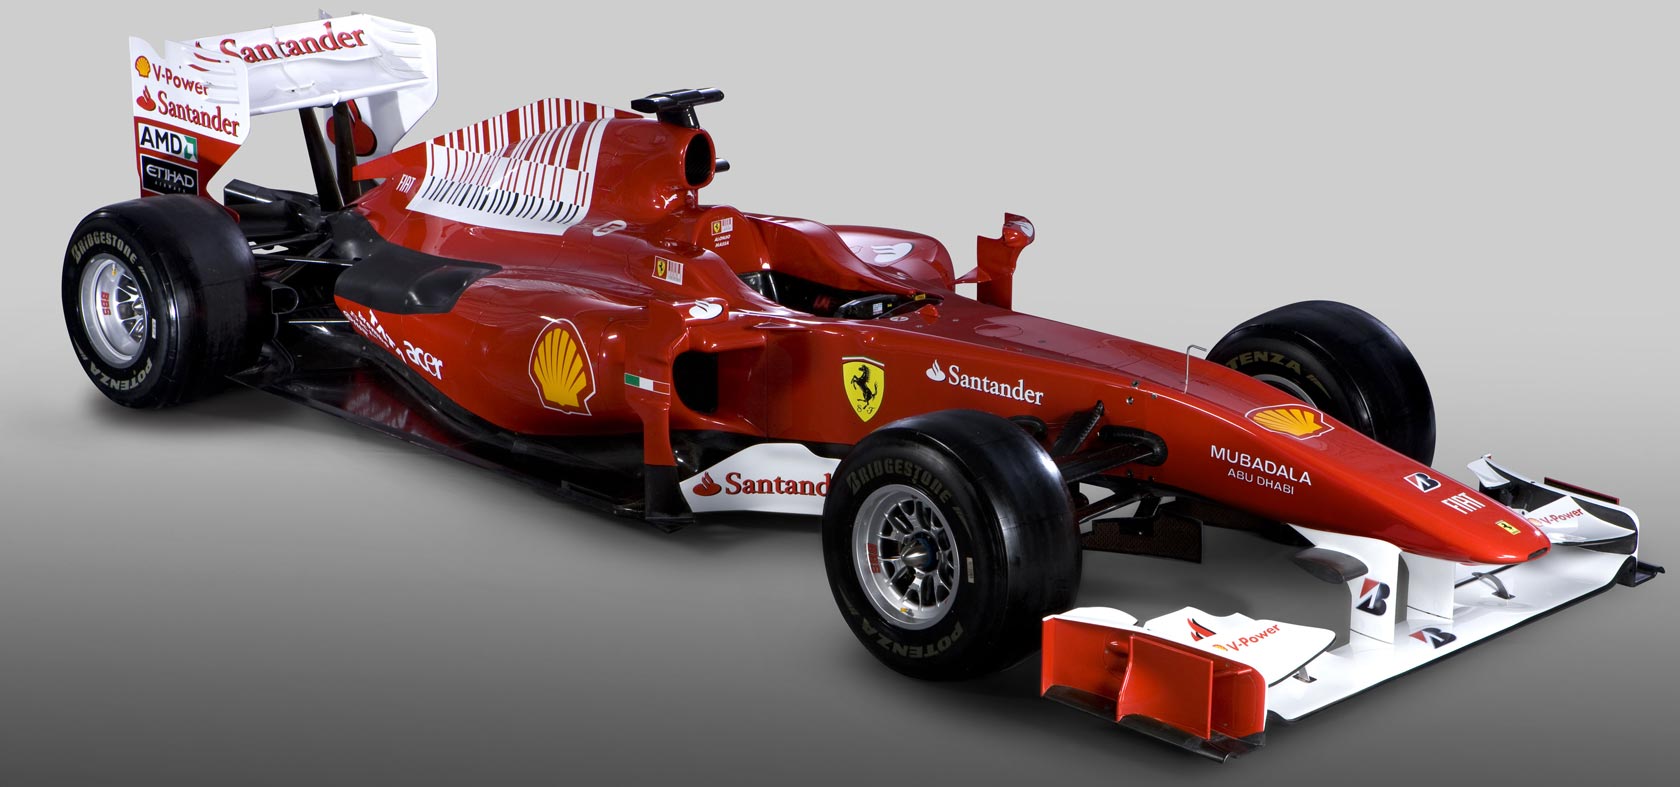 Ferrari F1 2010 photo - 1